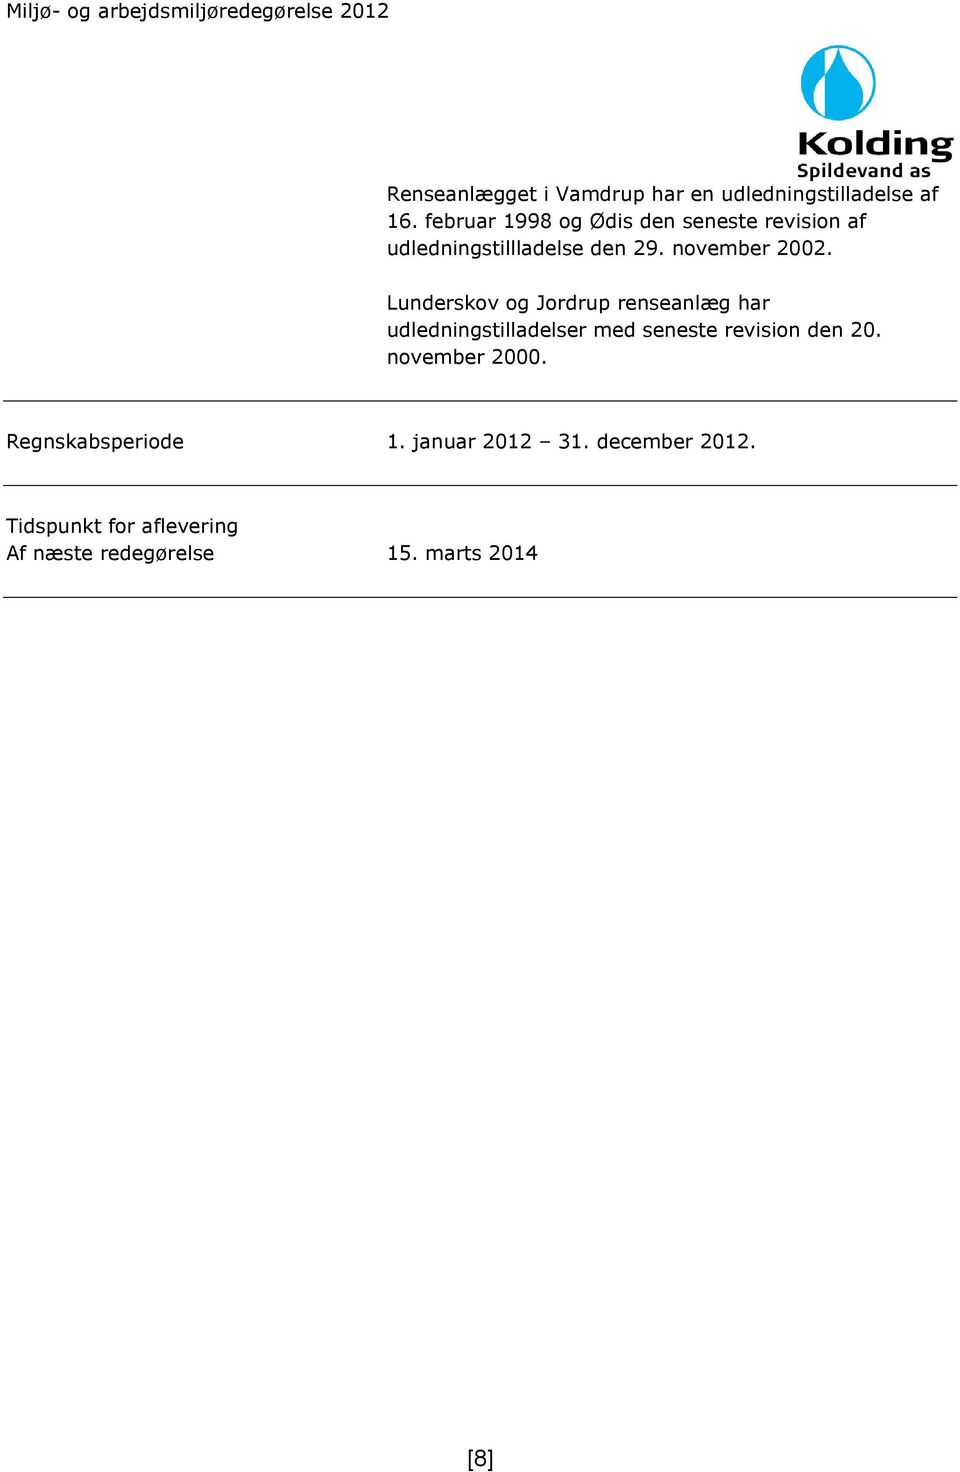 Lunderskov og Jordrup renseanlæg har udledningstilladelser med seneste revision den 20.